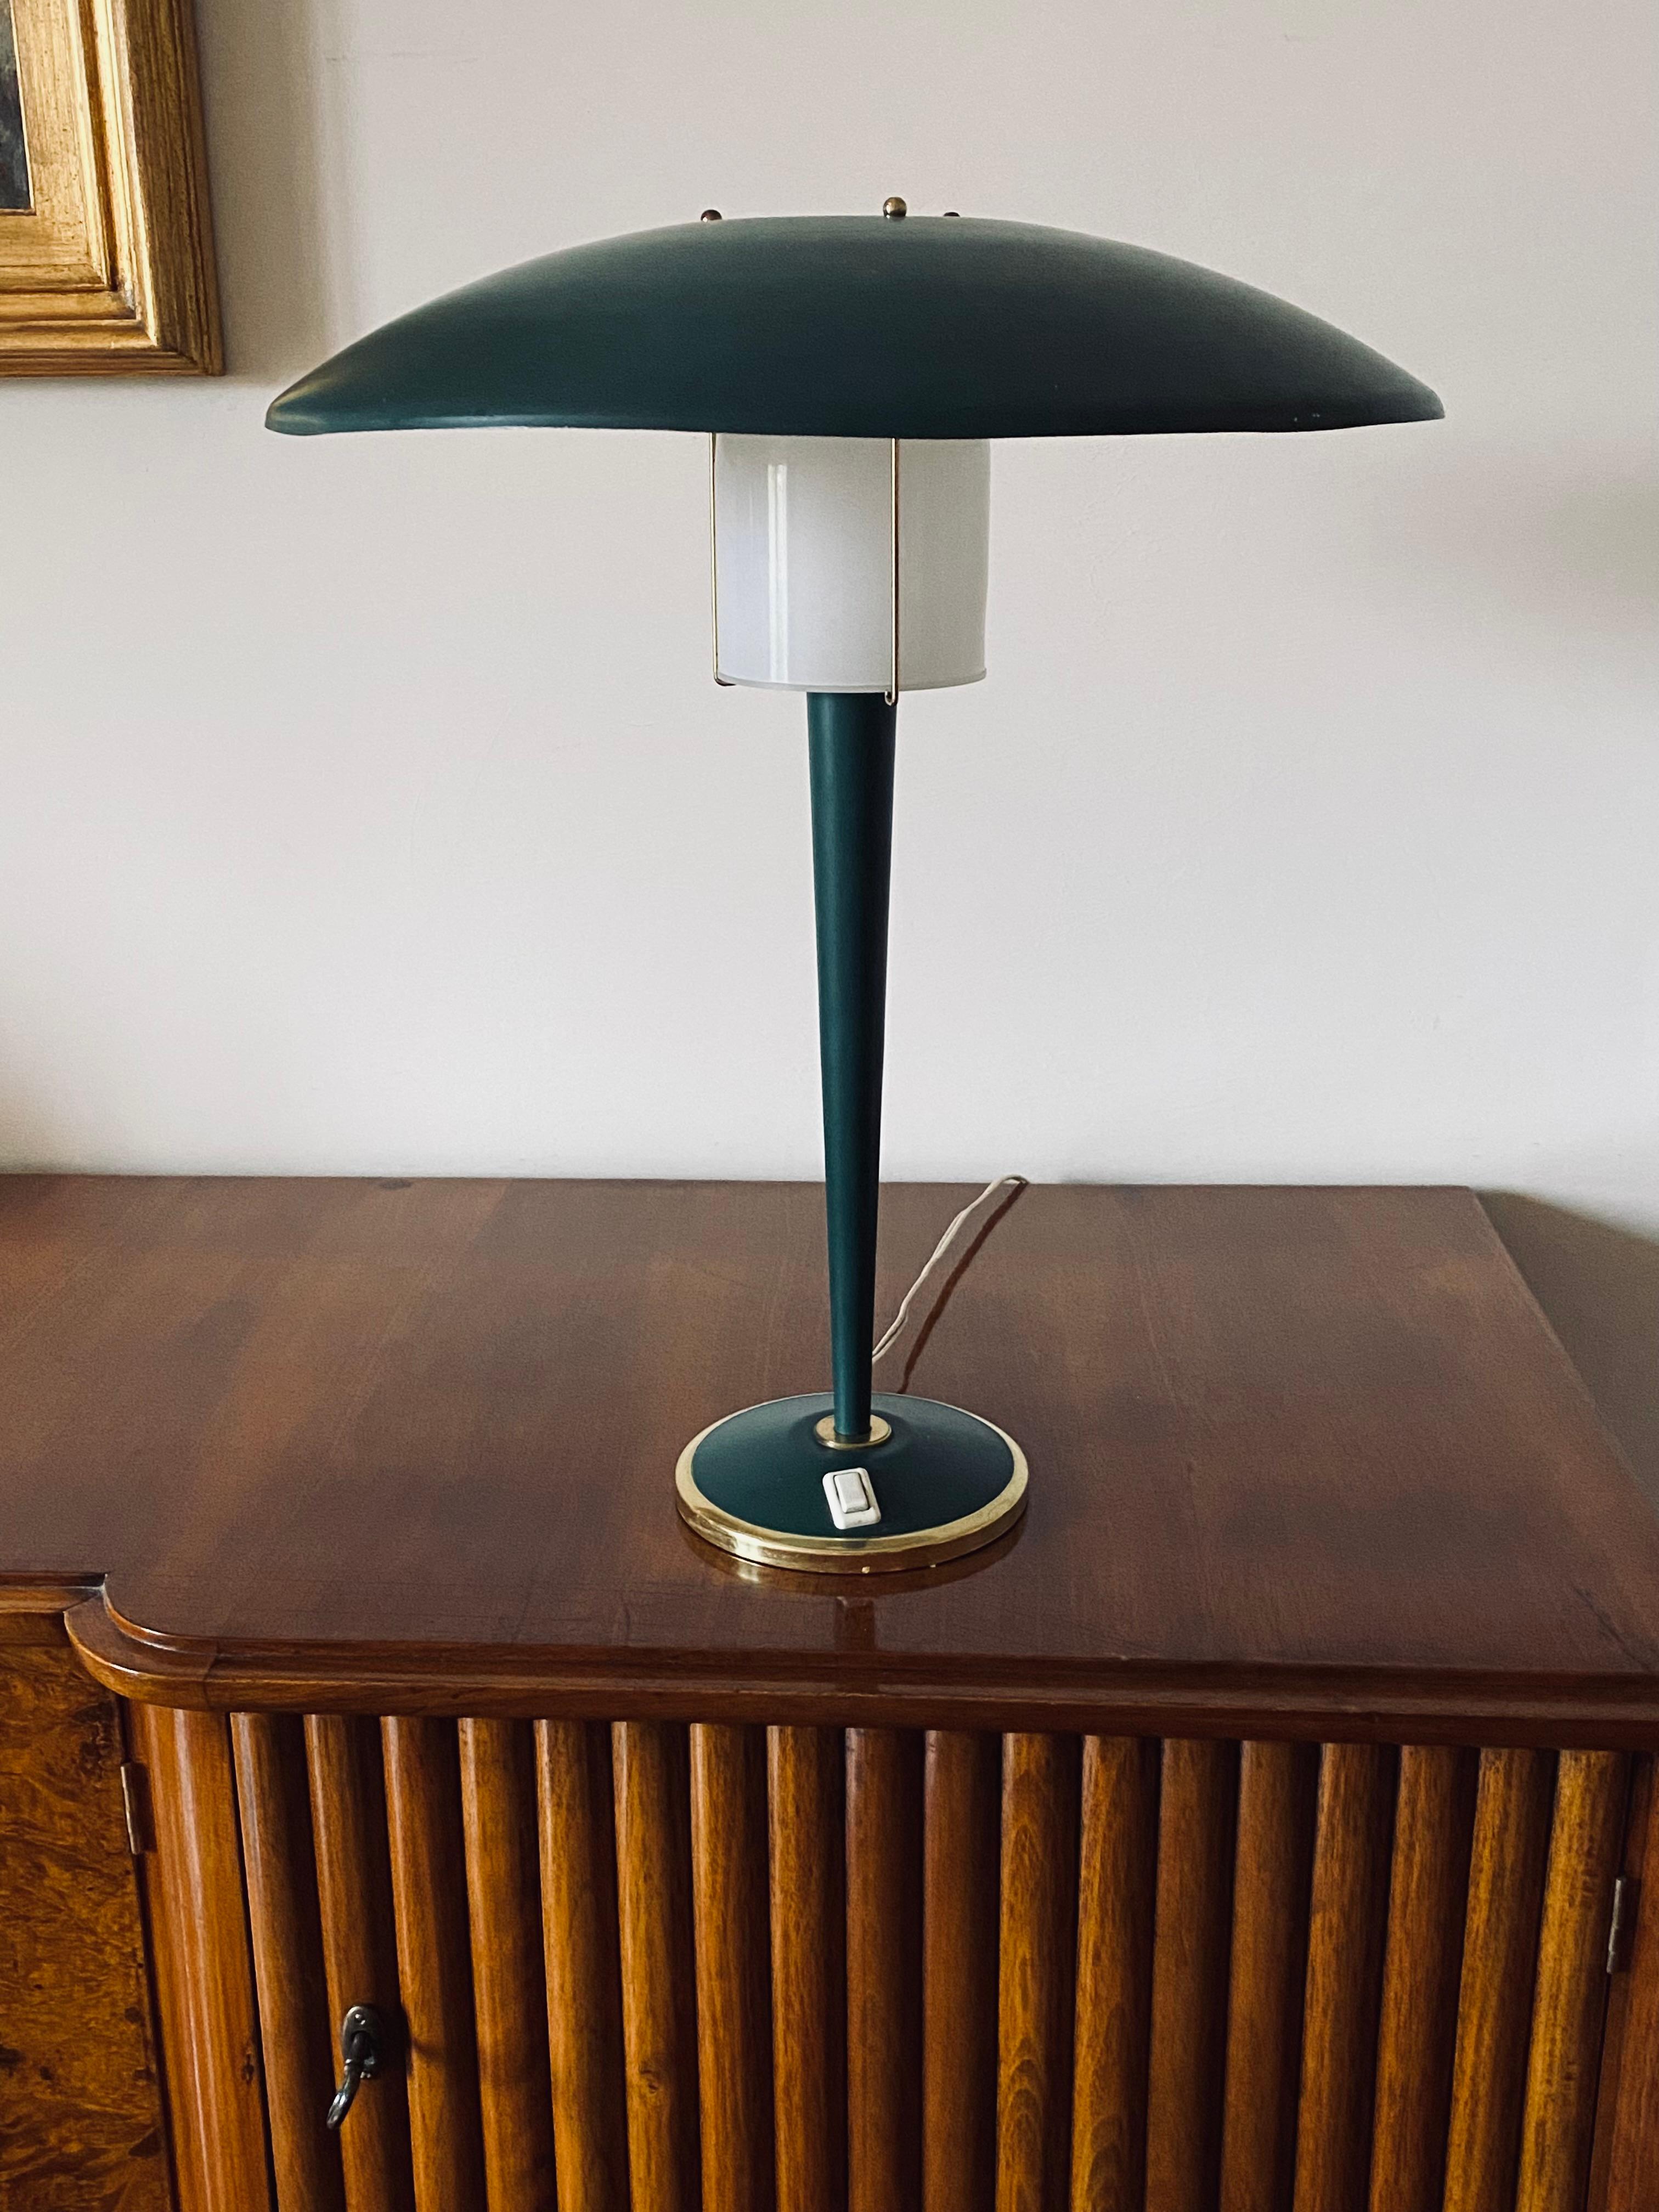 Lampe de table moderniste vert pétrole

France années 1960

Laiton, métal, lucite

H 50 x 40 cm Diam.

Condit : excellent, conforme à l'usage et à l'âge. Dans les conditions de travail.